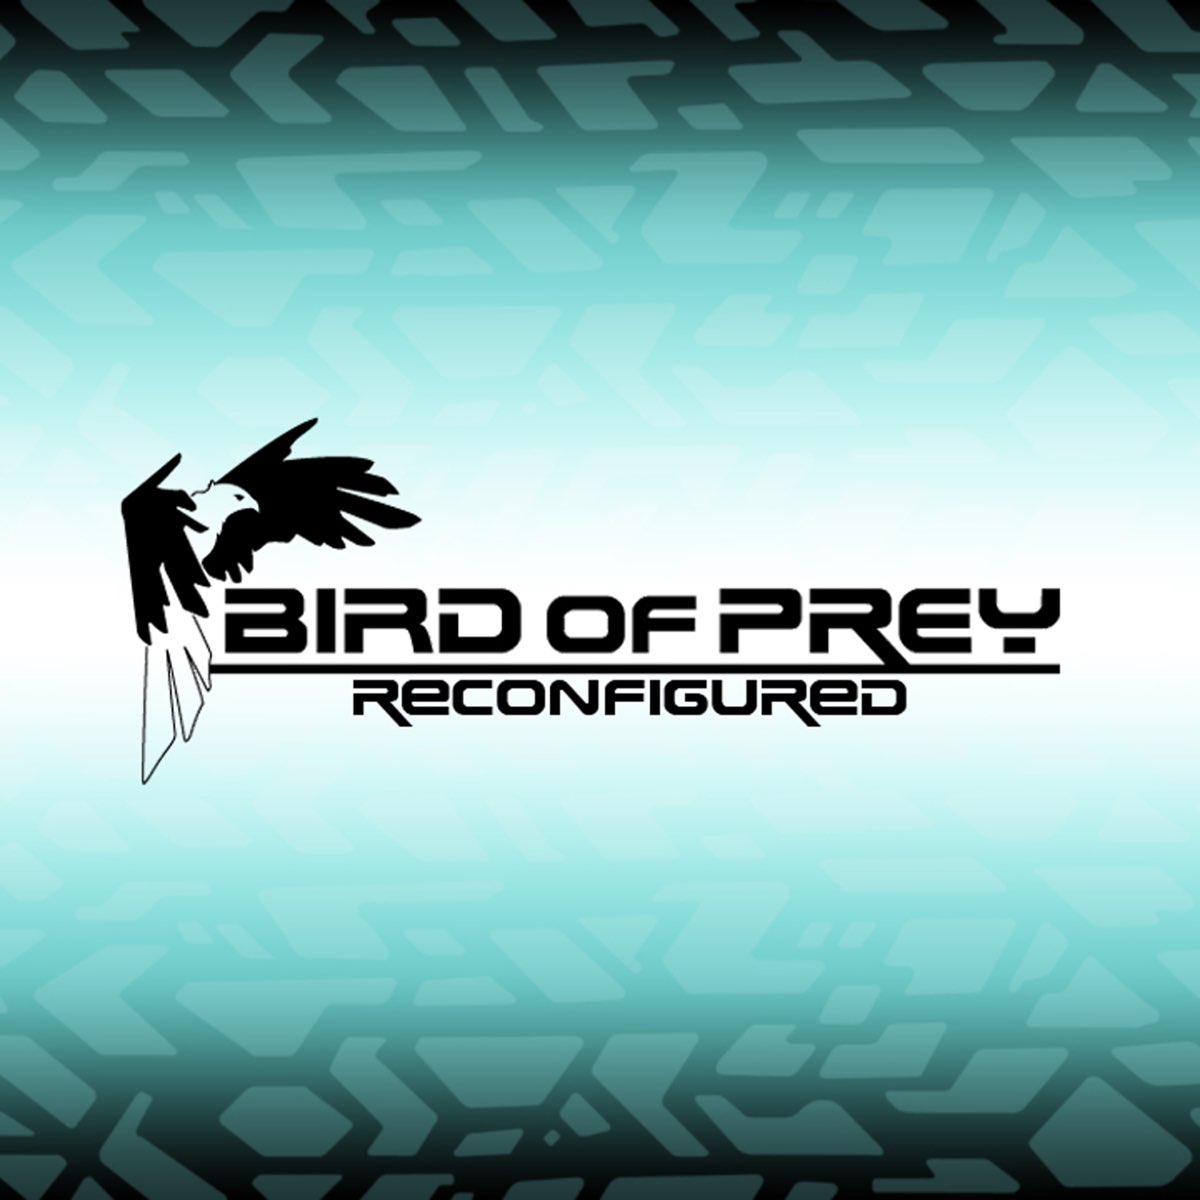 Bird remix. Birds of Prey. Bird of Prey / бёрд оф Прэй (светлое нефильтрованное неосветленное). Пиво "Bird of Prey" ("Берд оф Прэй") светлое нефильтр. Неосветл. Непаст..